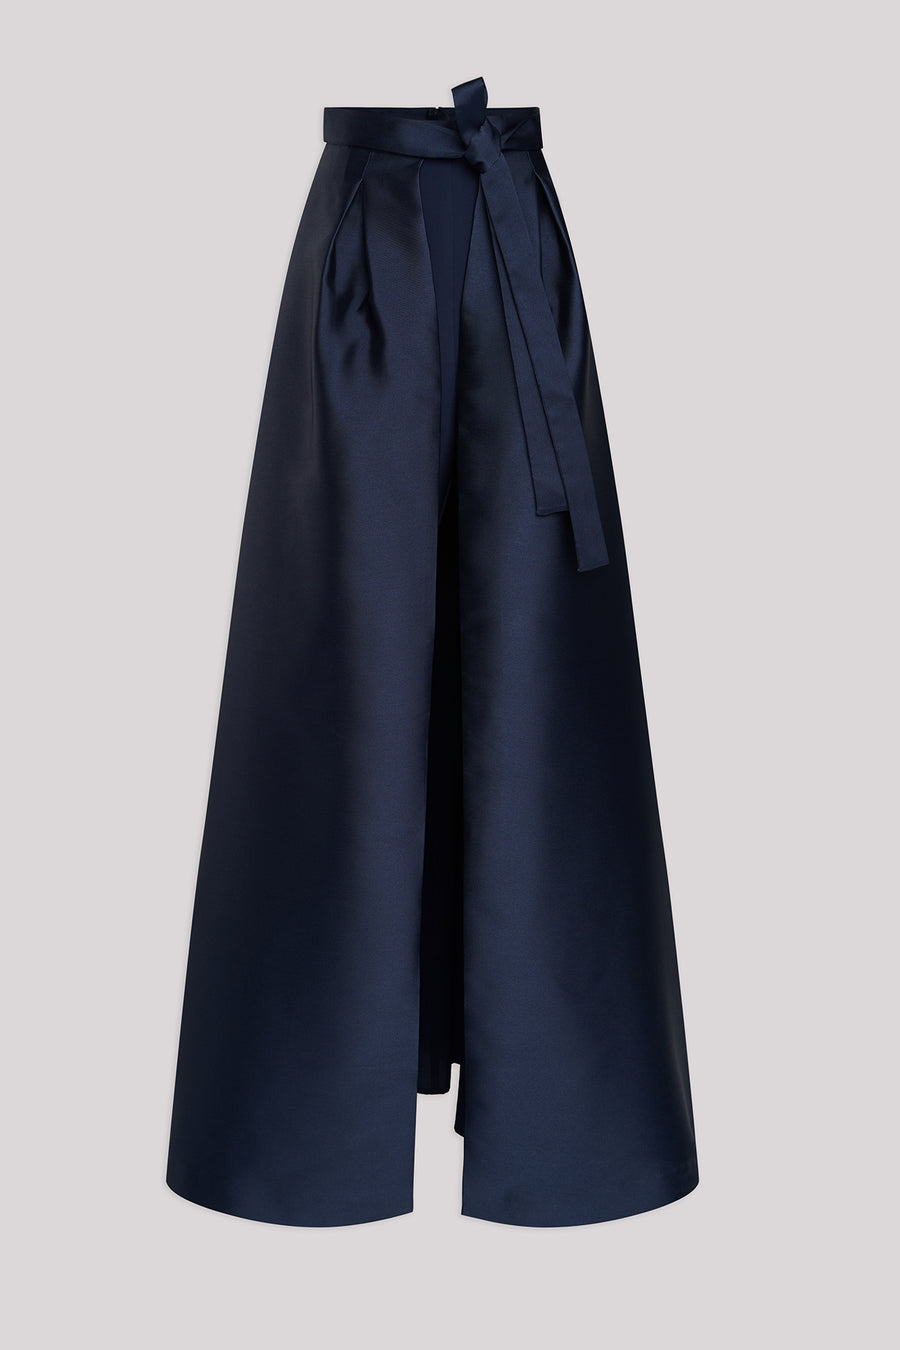 Verona Pant With Skirt Overlay